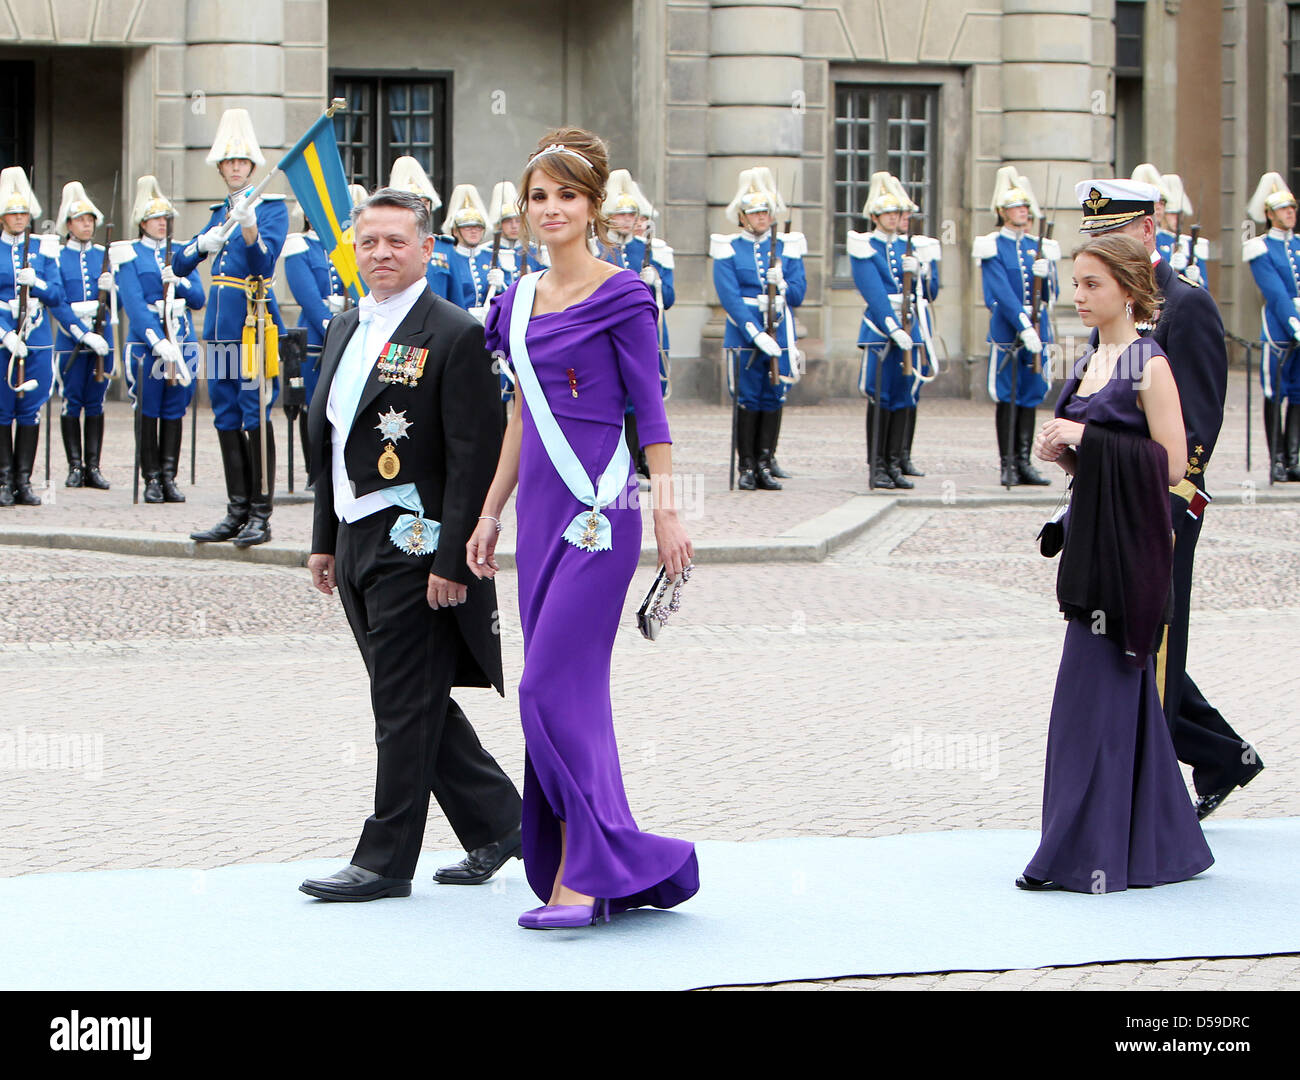 King Abdullah II of Jordan and his wife Queen Rania of Jordan arrive for the wedding of Crown Princess Victoria of Sweden and Daniel Westling in Stockholm, Sweden, 19 June 2010. Photo: Patrick van Katwijk Stock Photo